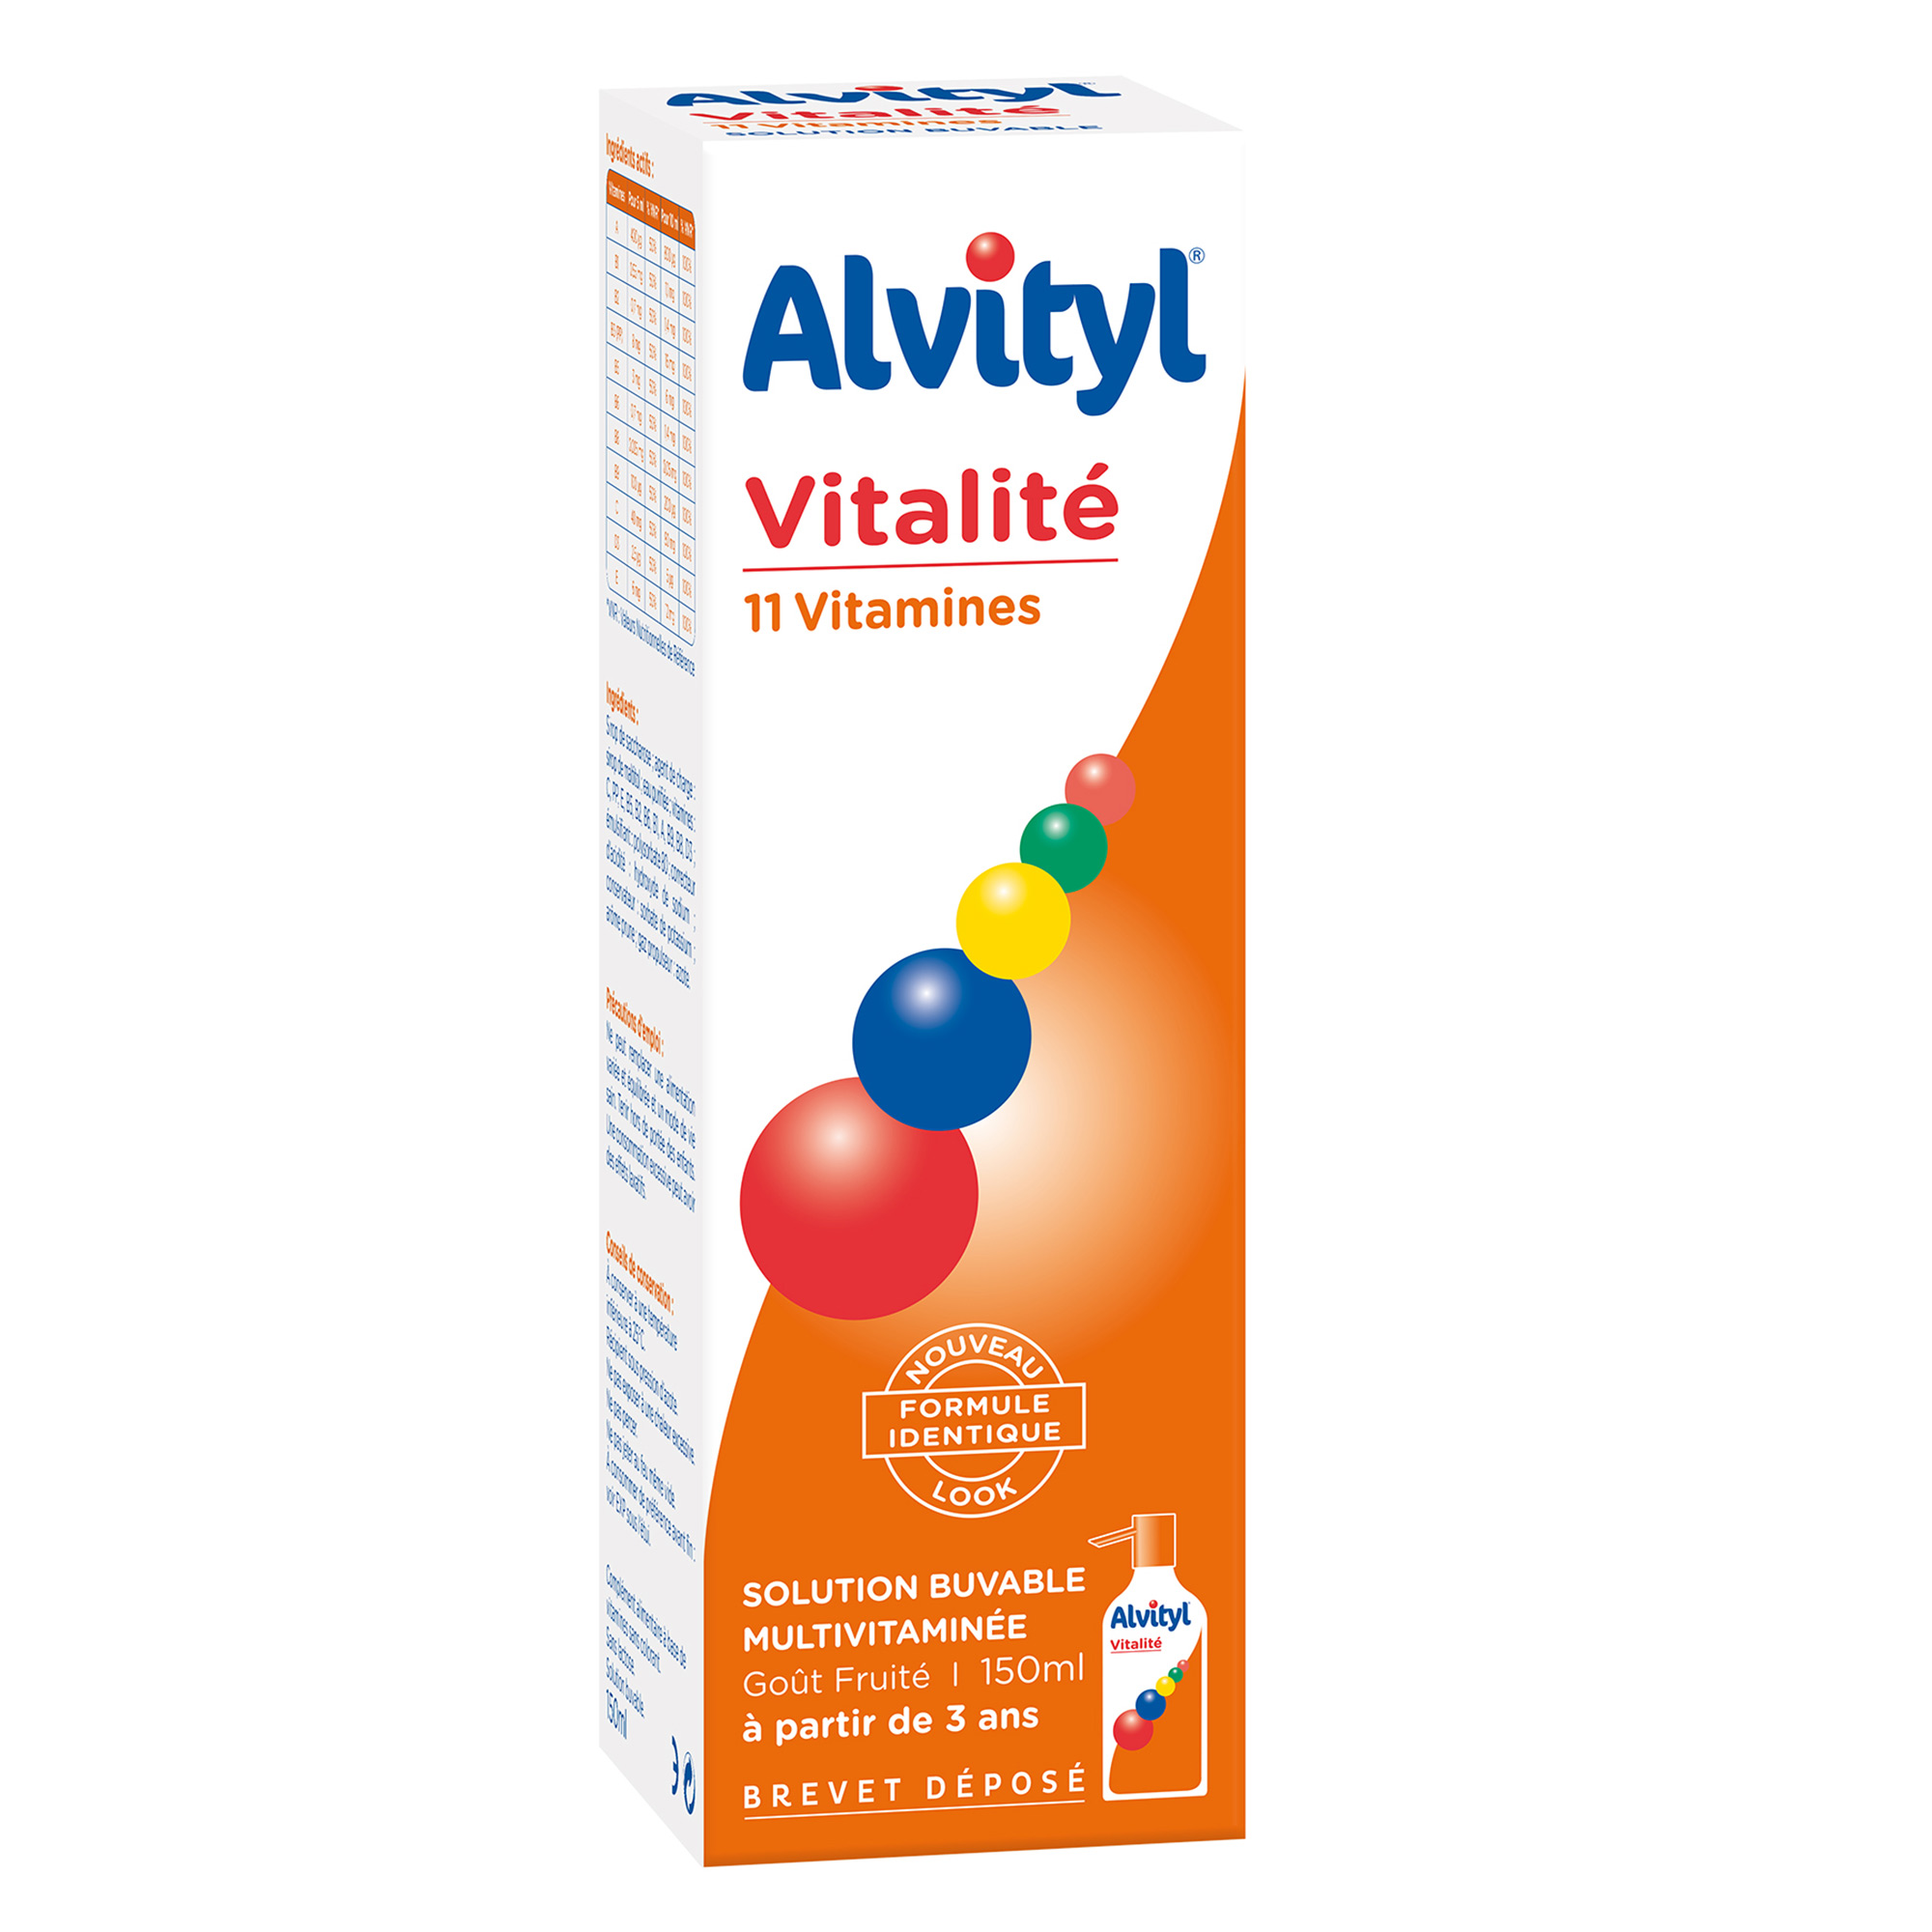 Alvityl Vitalité Solution buvable multivitaminée, goût fruité 11